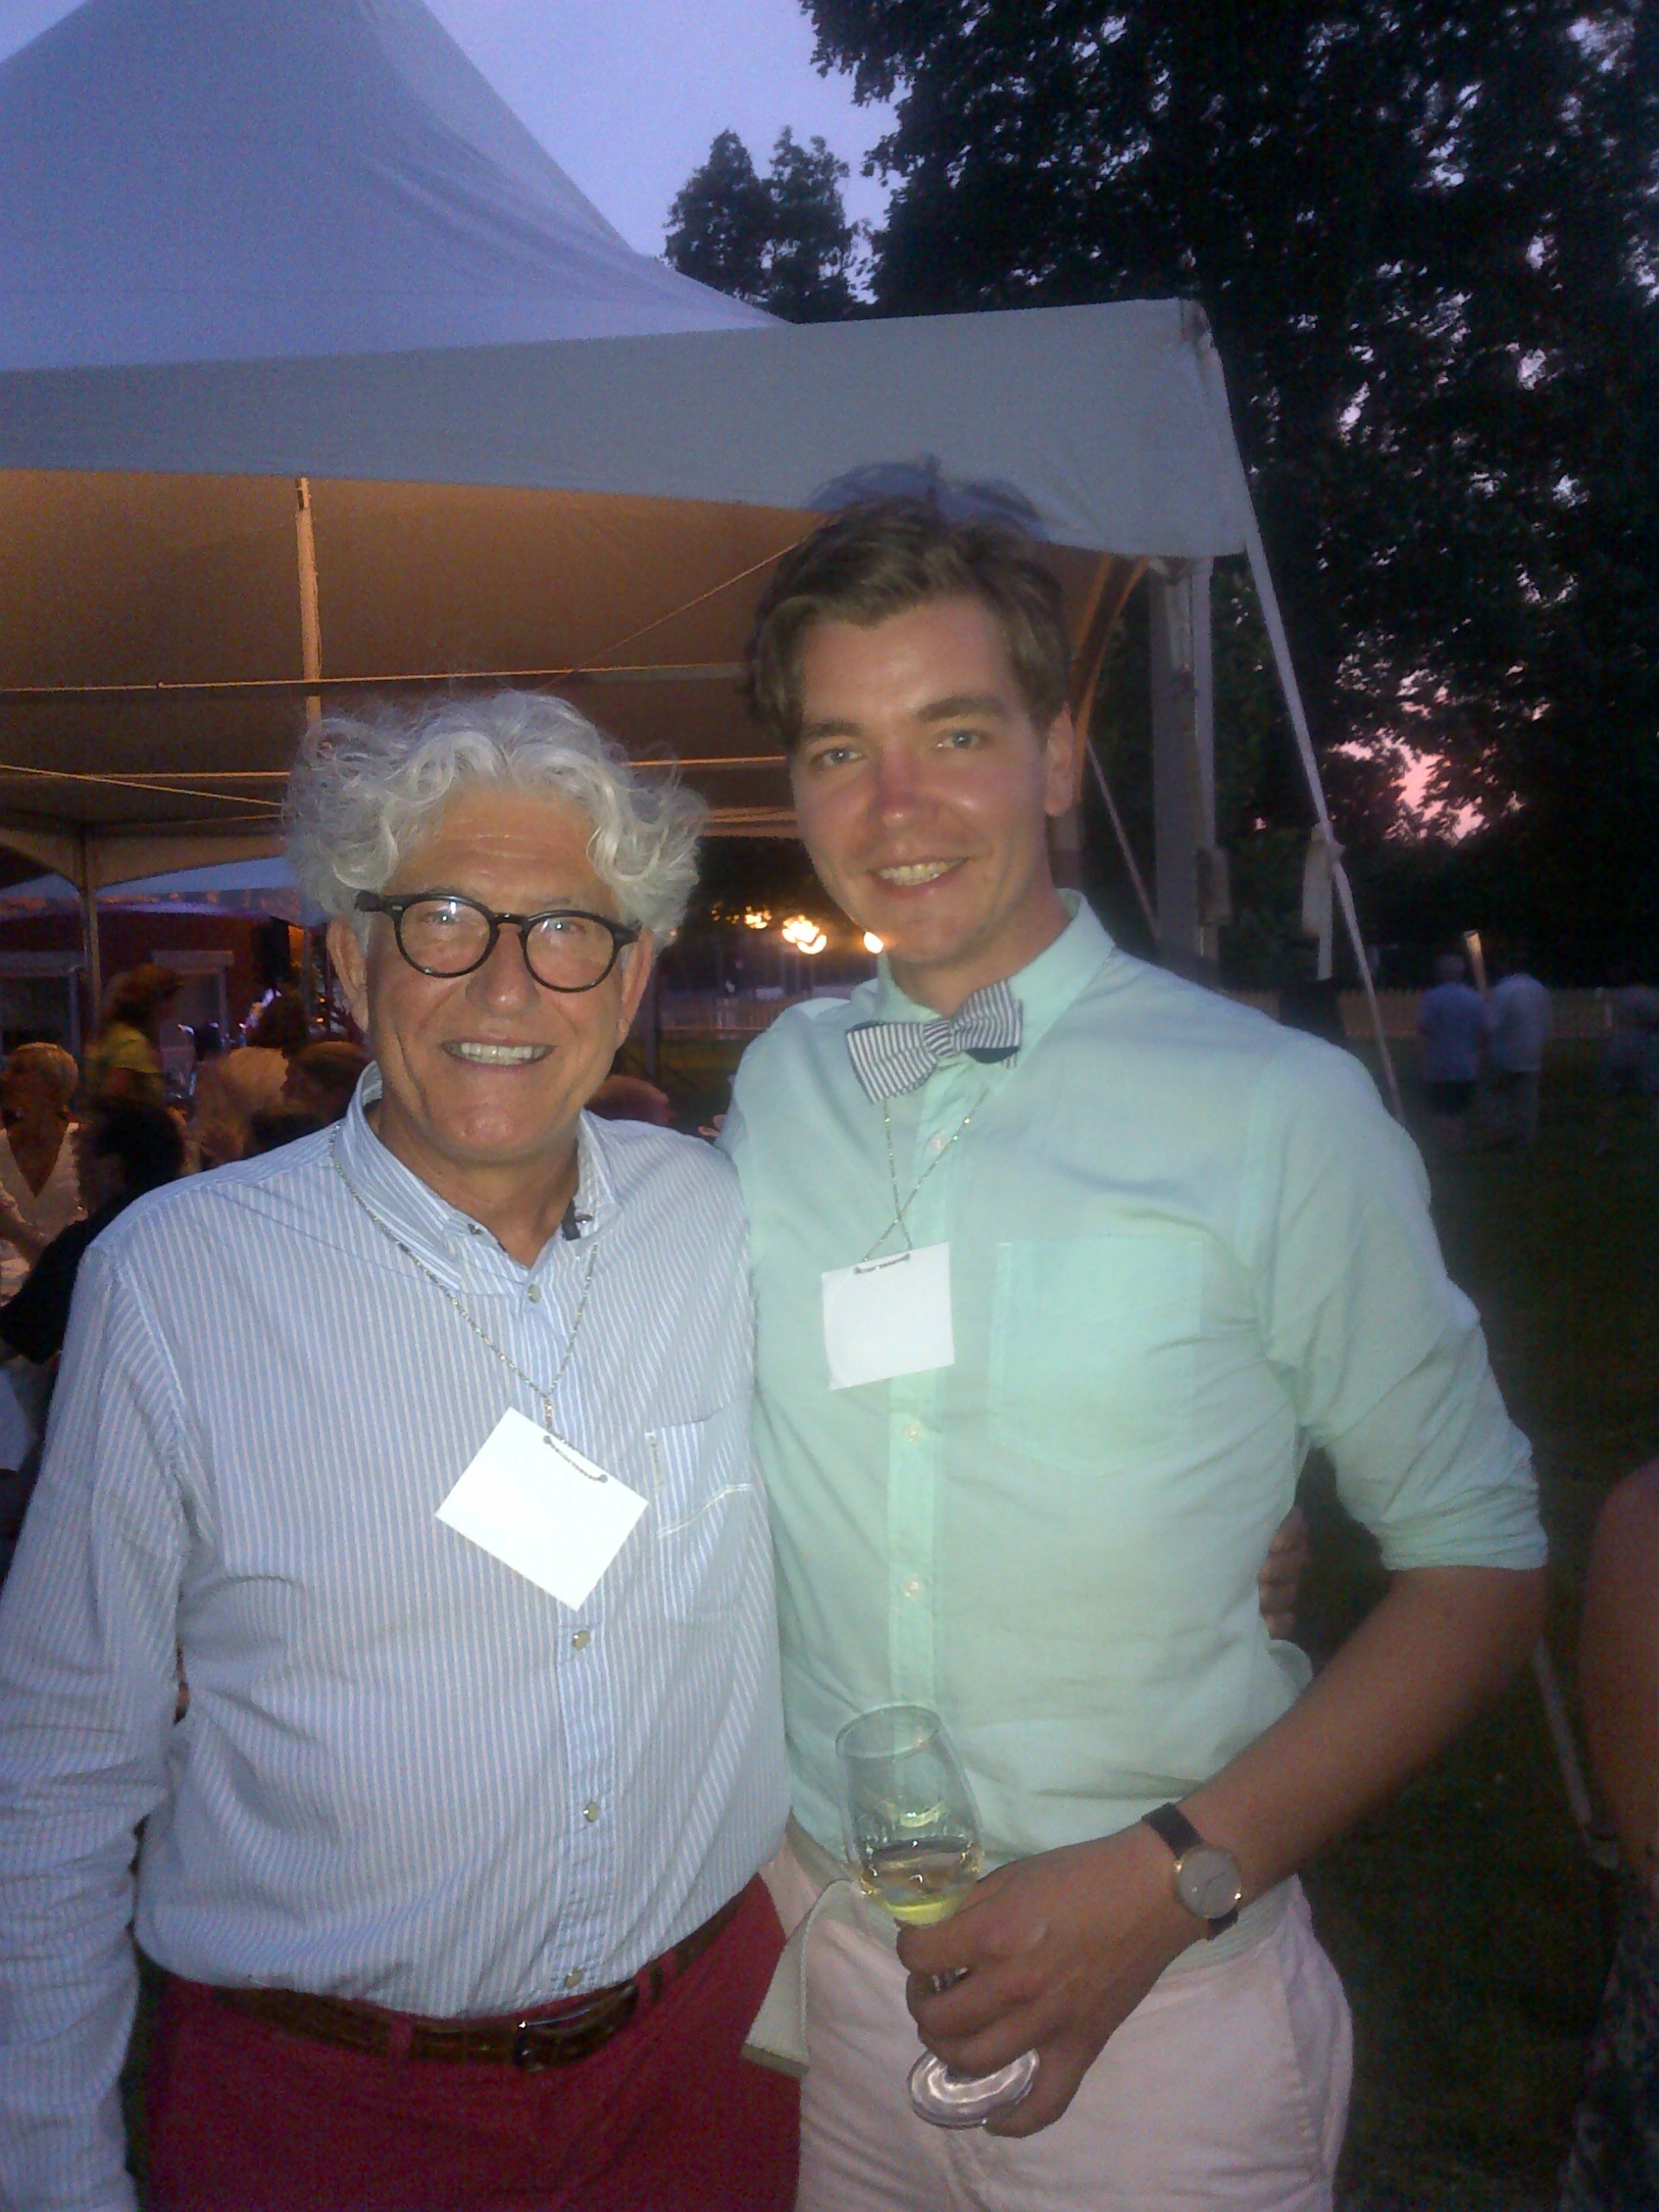  Jacques Lardiere and I at i4c gala.  